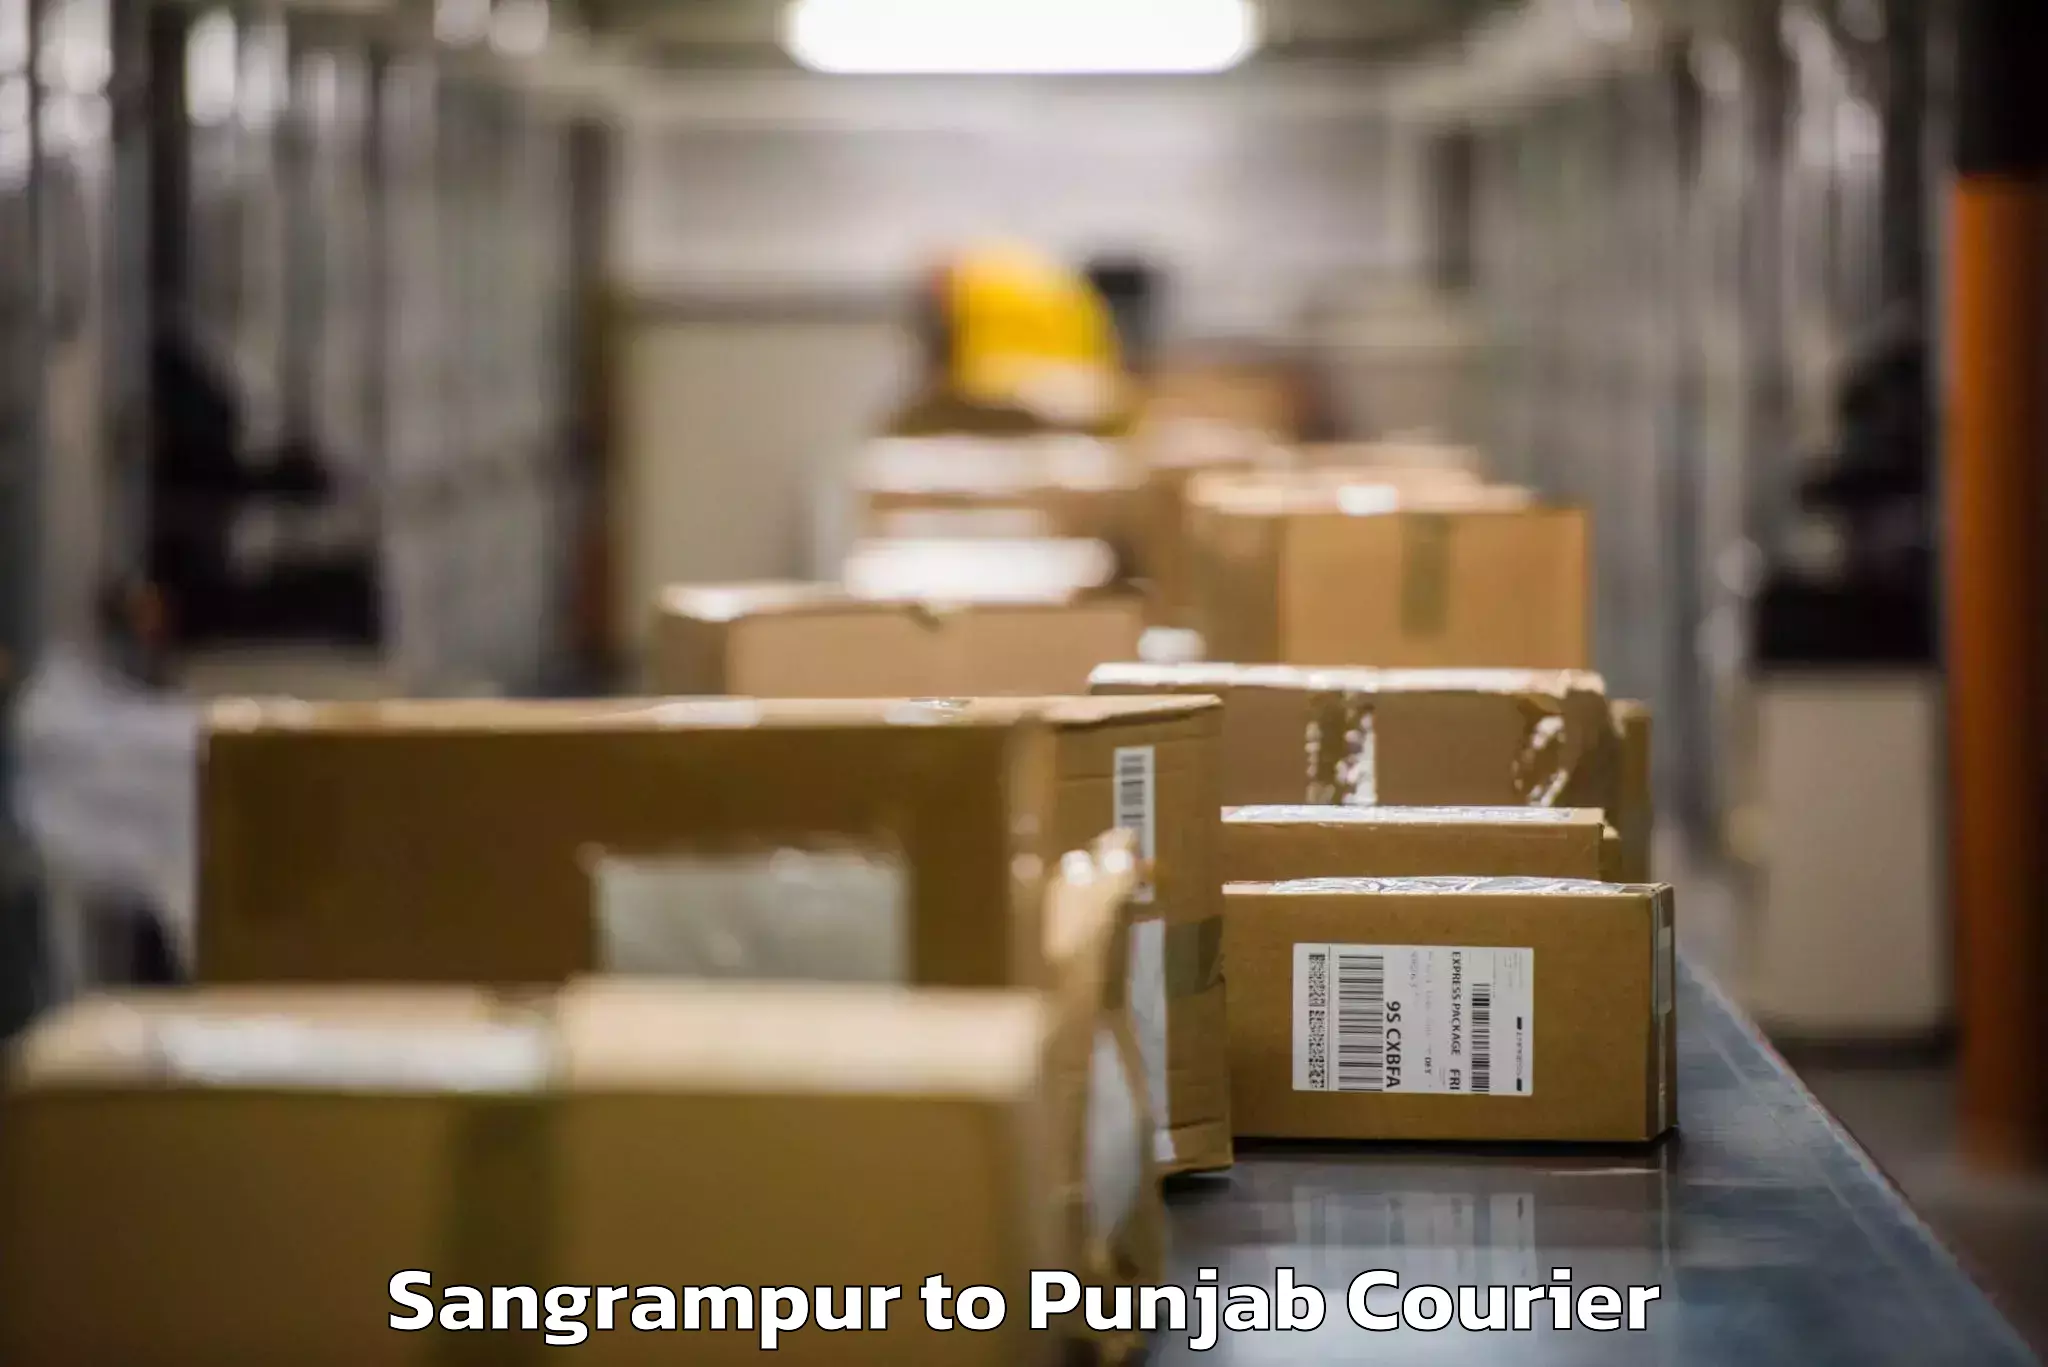 Baggage relocation service Sangrampur to Nawanshahr